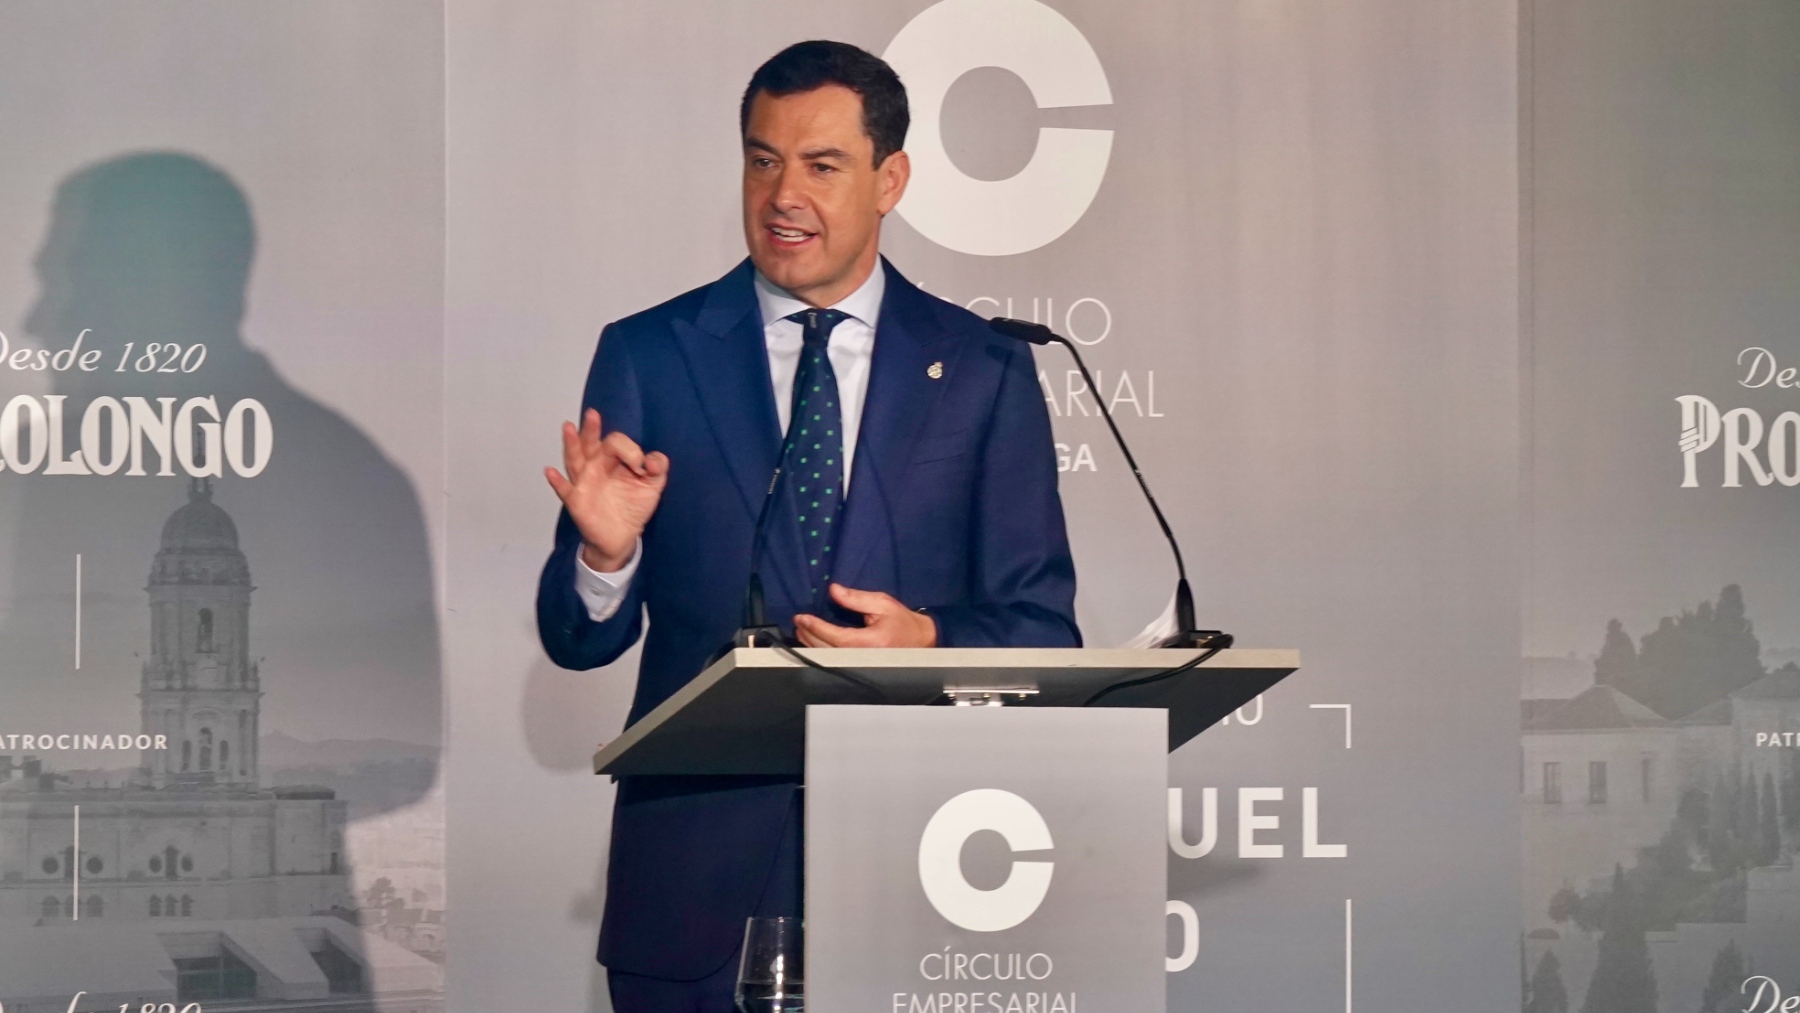 El presidente andaluz ha anunciado el prescindir de esta posibilidad en un encuentro organizado por el Círculo Empresarial de Málaga